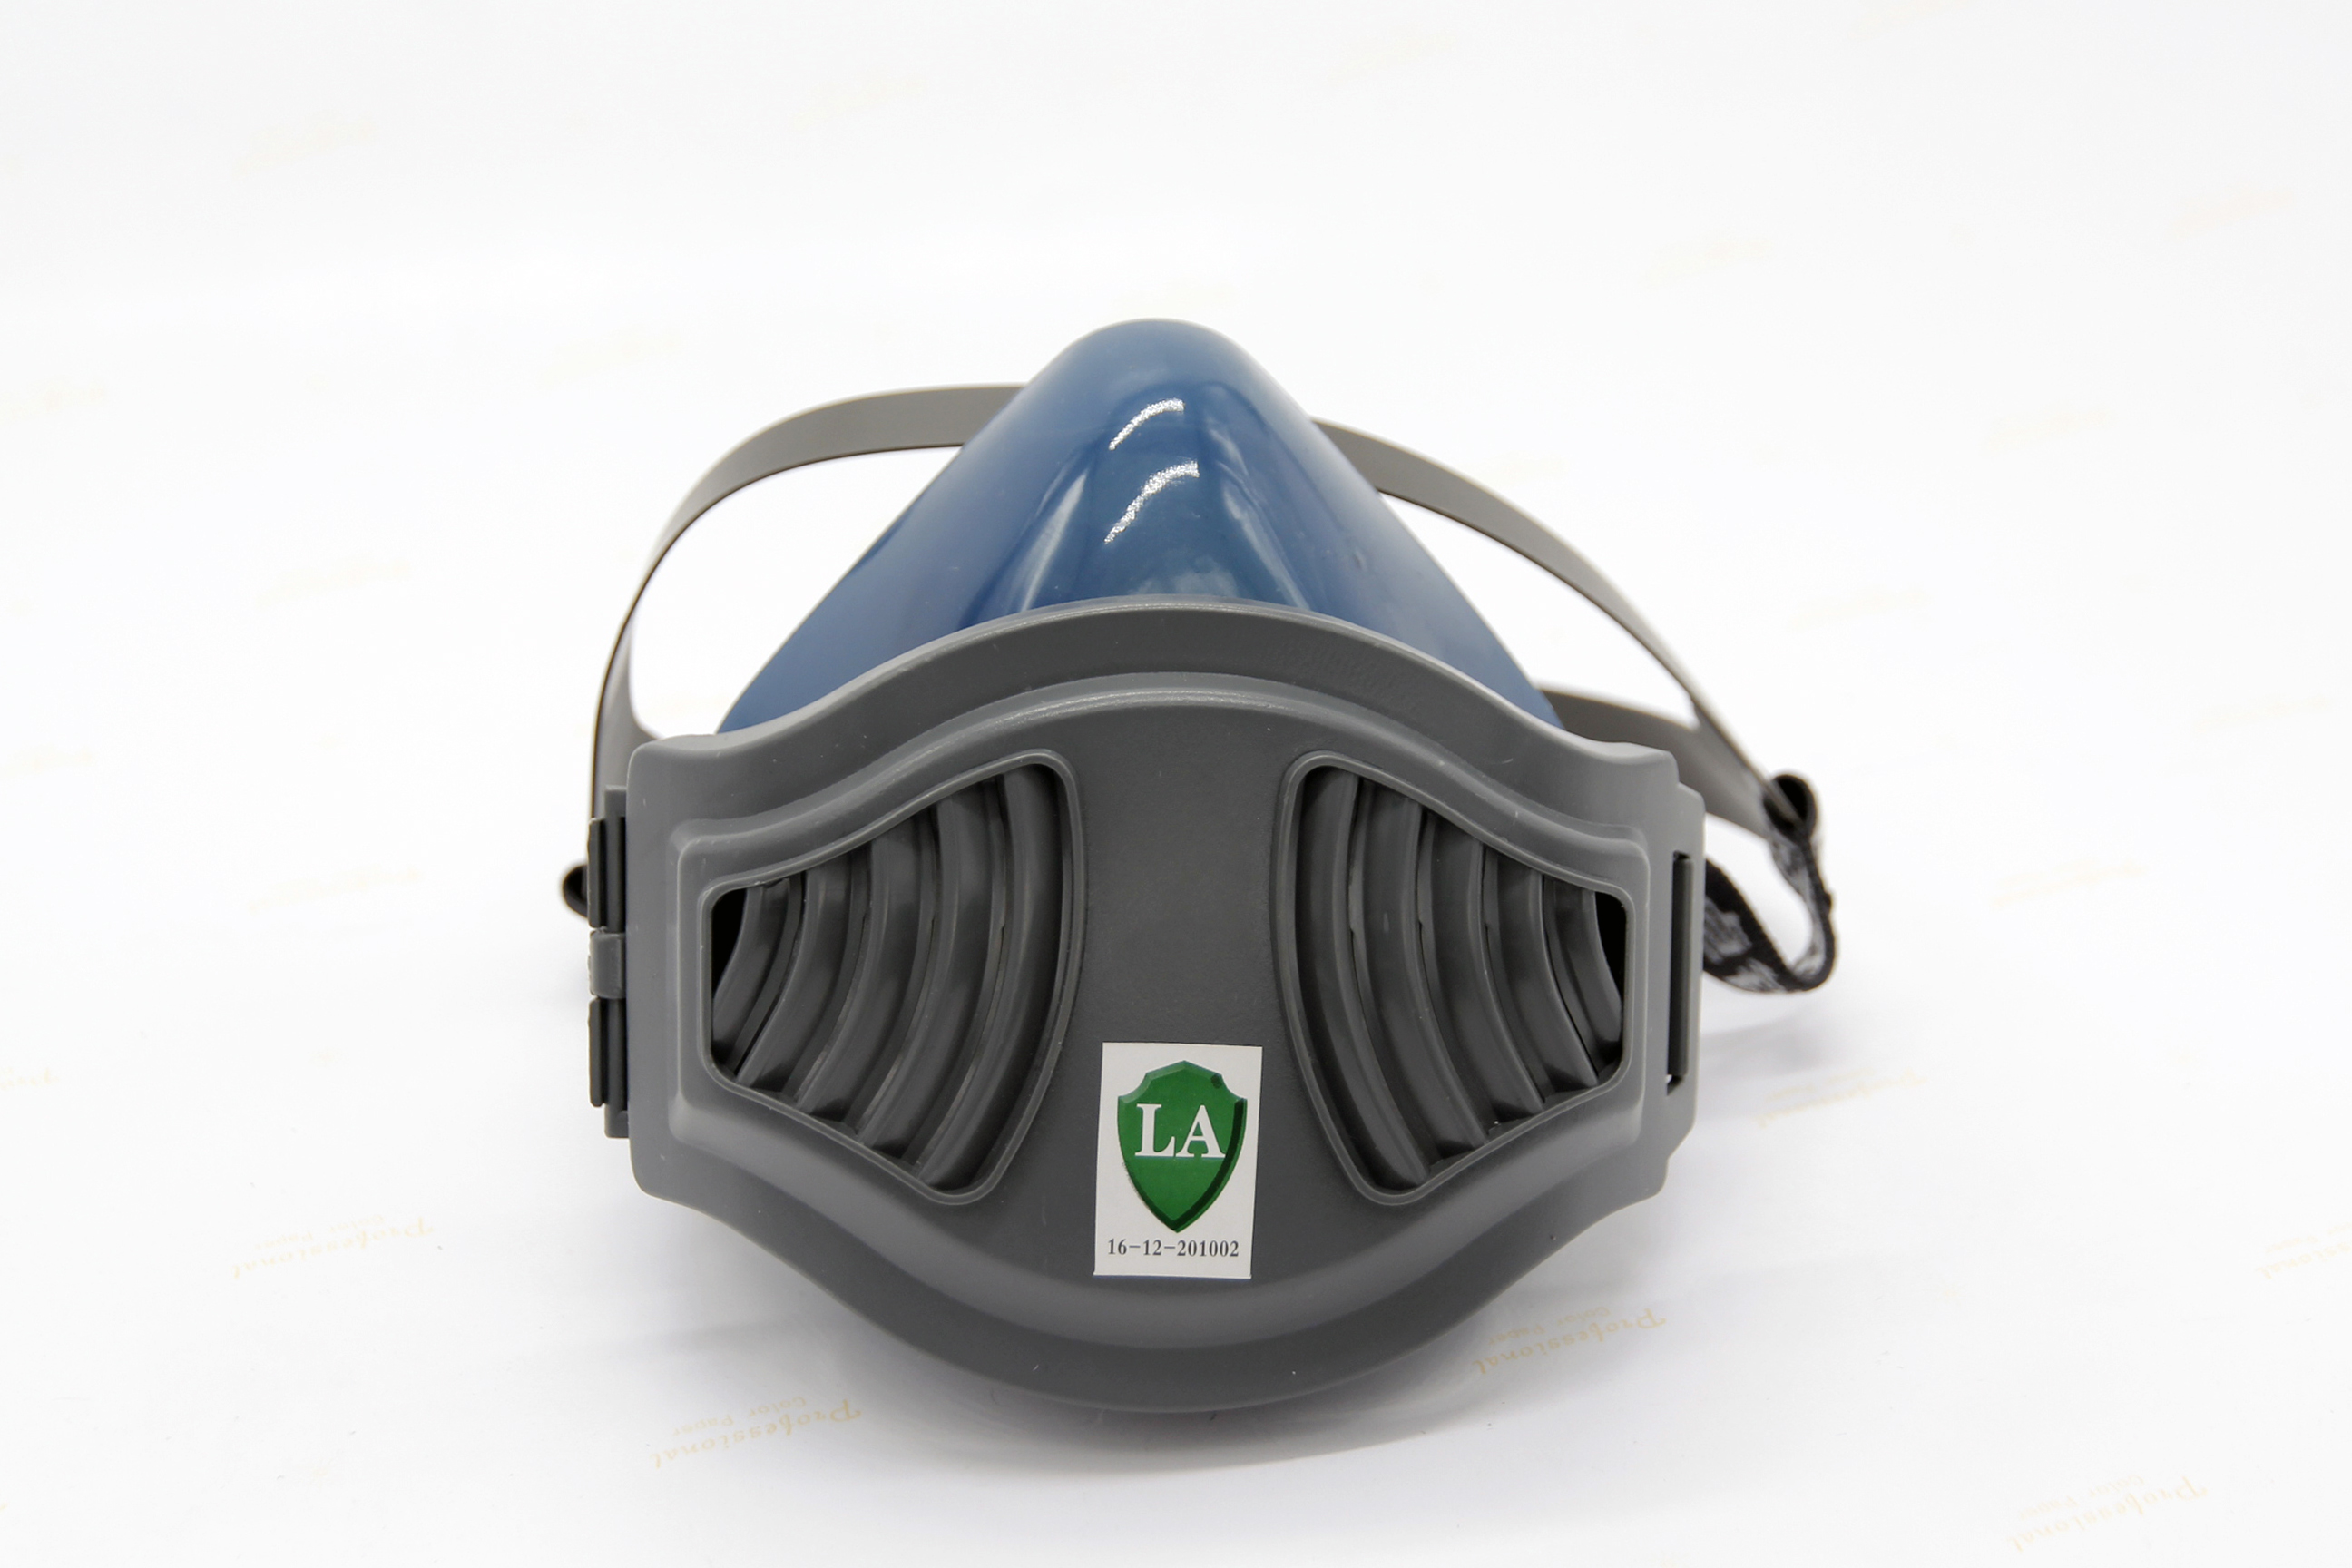 無動力空氣淨化顆粒呼吸器 PPE-7702